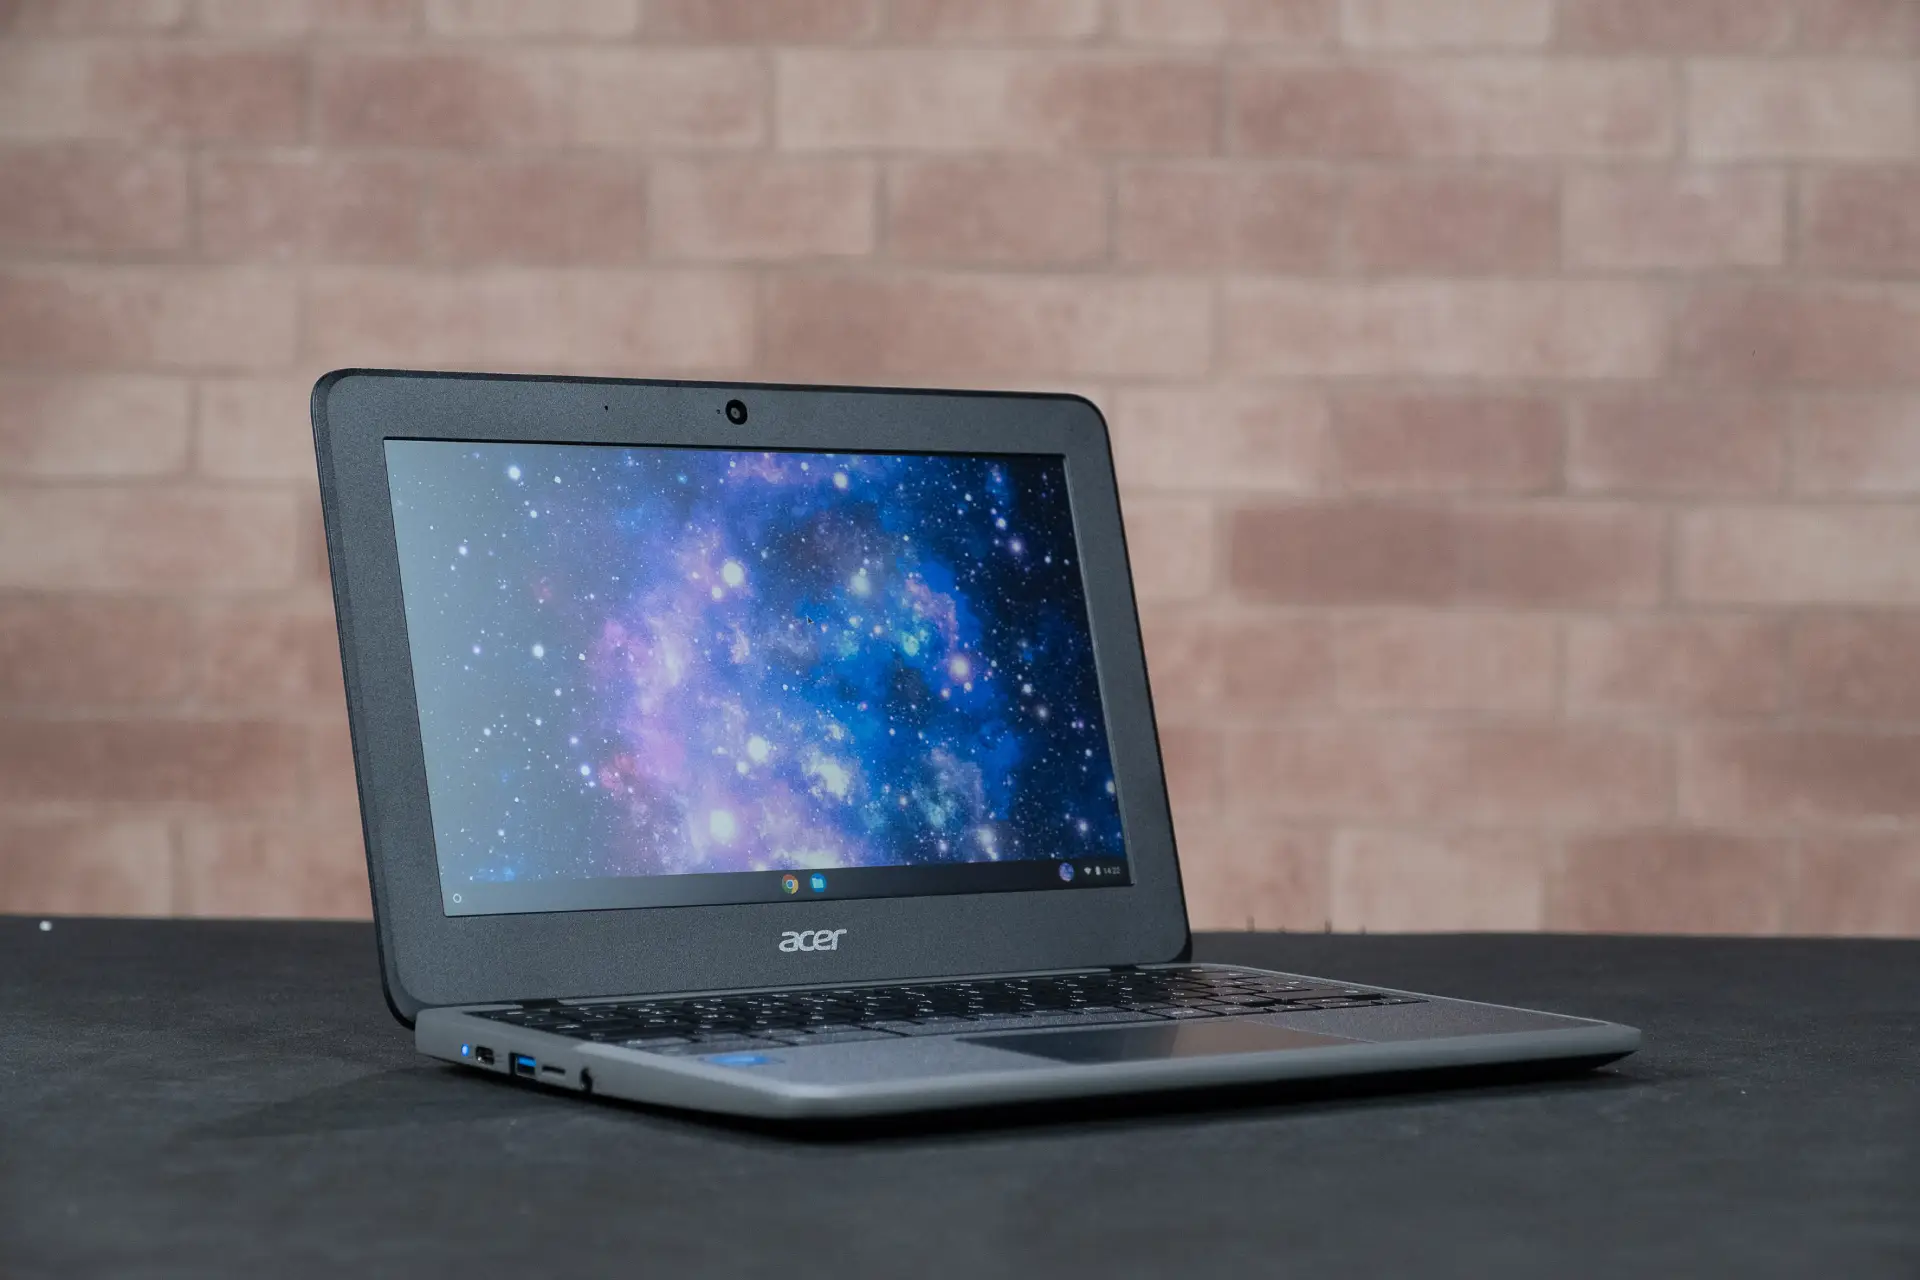 Foto da tela do Acer Chromebook mostrando um papel de parede espacial